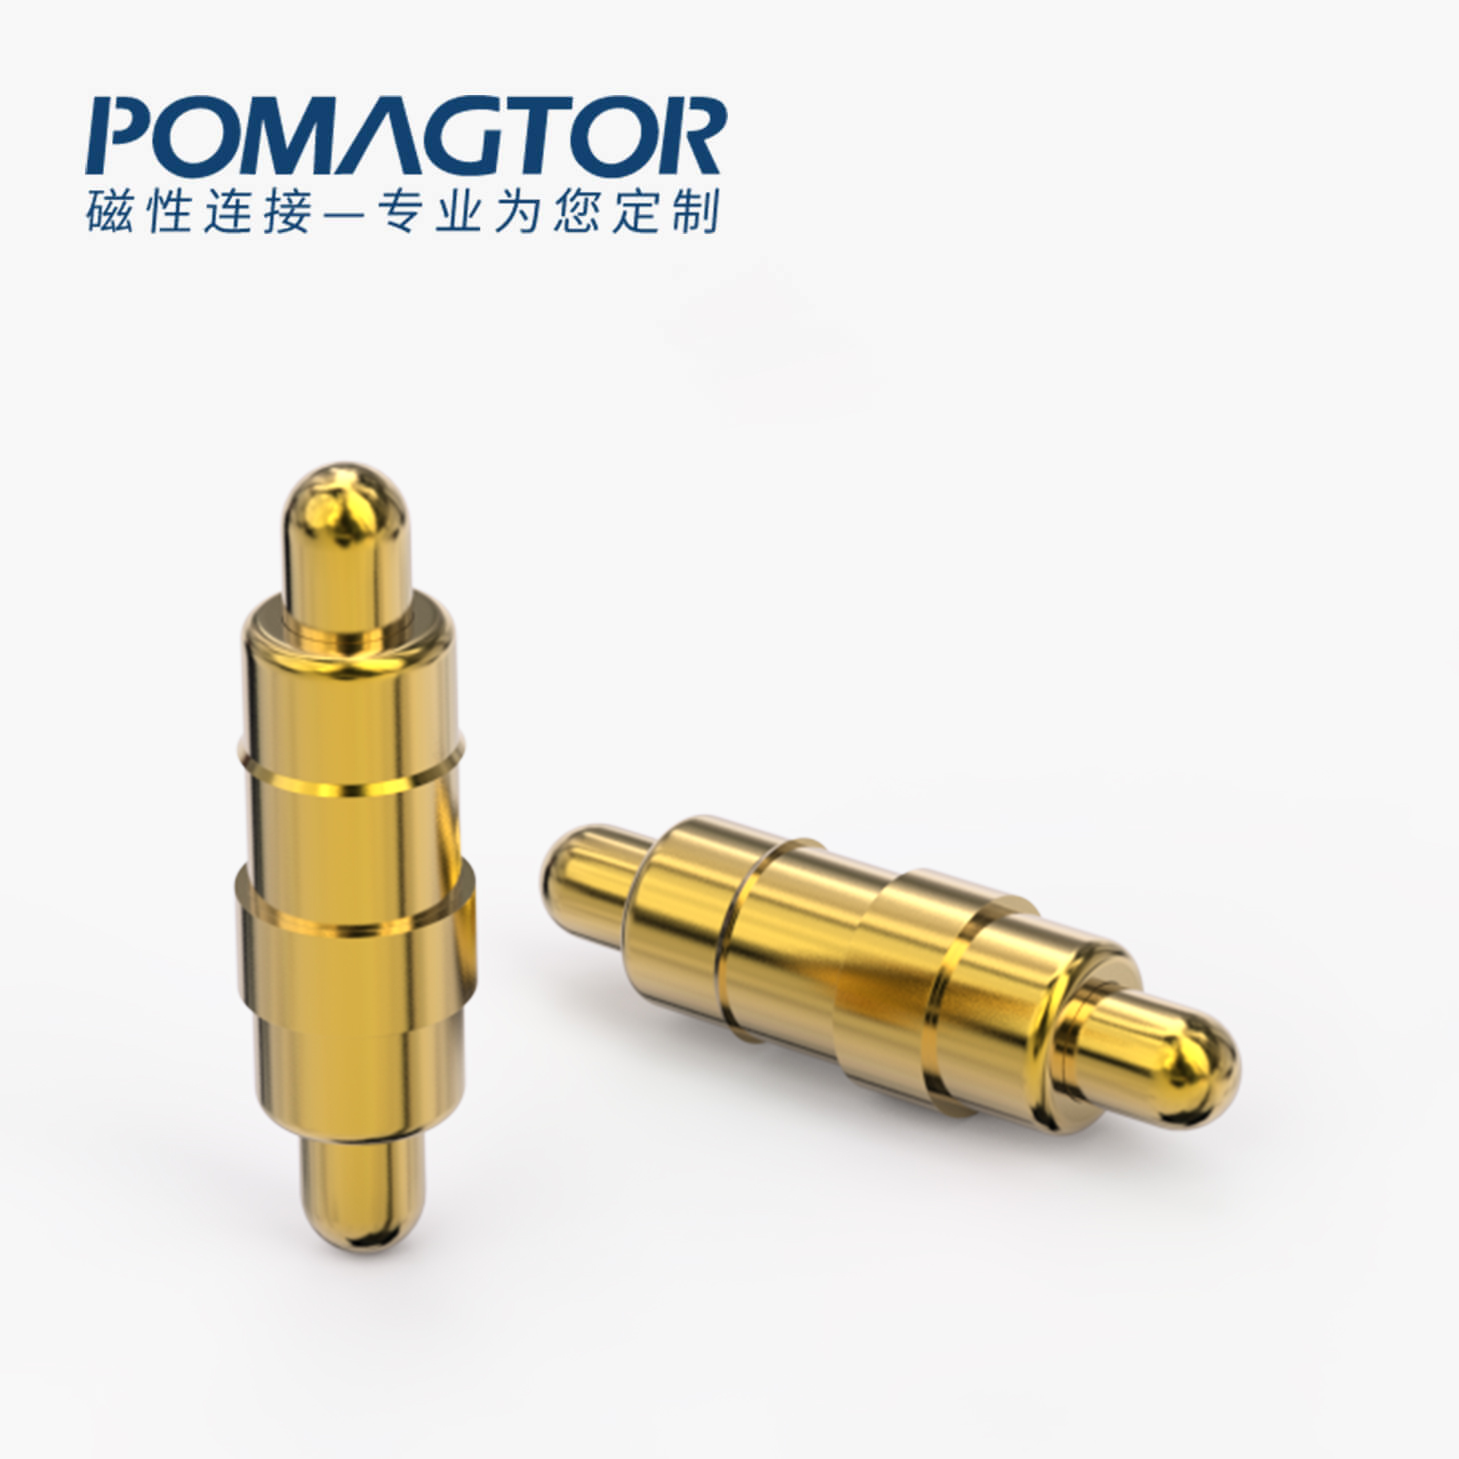 POGO PIN 双头式：电镀黄铜Au1u，电压12V，电流1A，弹力10000次+，工作温度-40°~150°